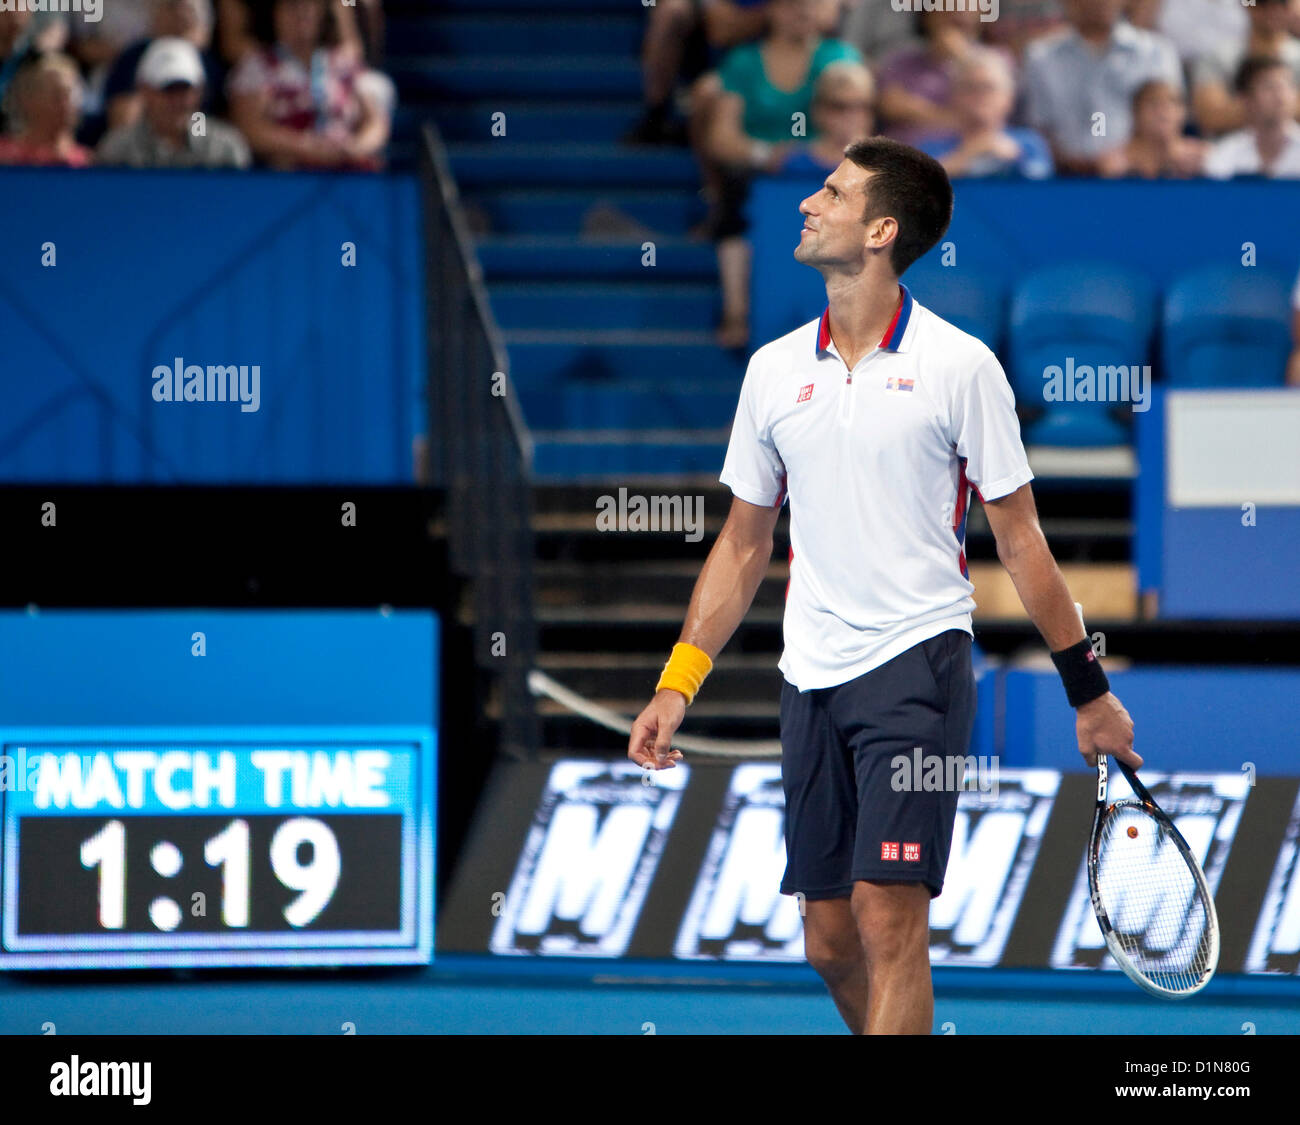 30.12.2012 en Perth, Australia. Novak Djokovic (SER) reacciona a un punto durante el Hyundai Hopman cup desde la arena de Perth. Foto de stock